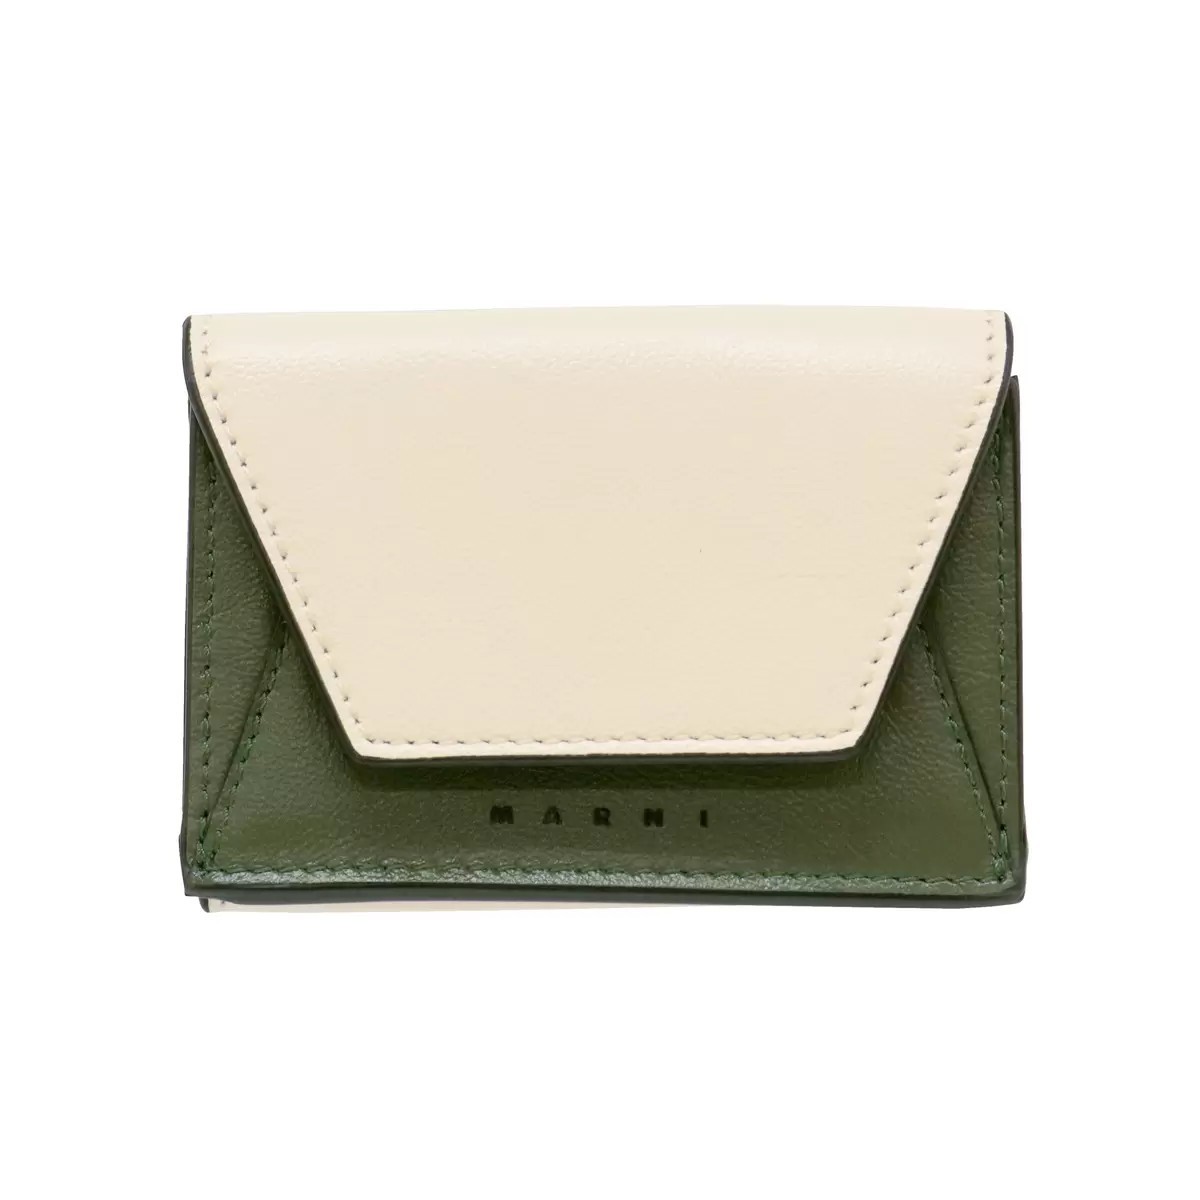 マルニ メンズ 三つ折り財布 - ホワイト/グリーン